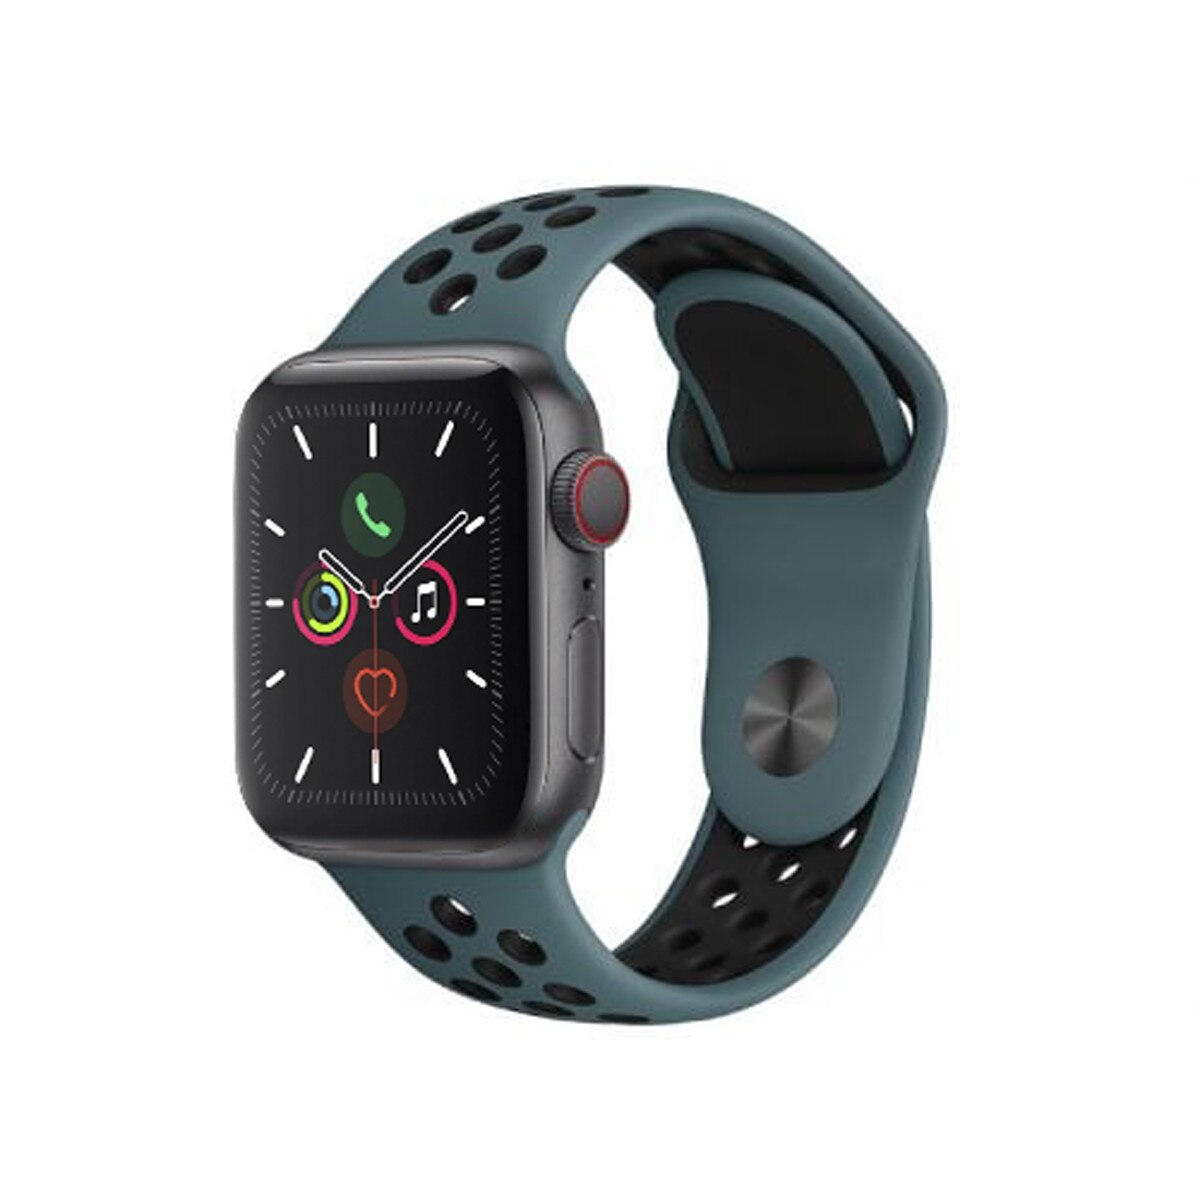 Apple nu va afișa iwatch 9 septembrie - Tehnologiei - 2021